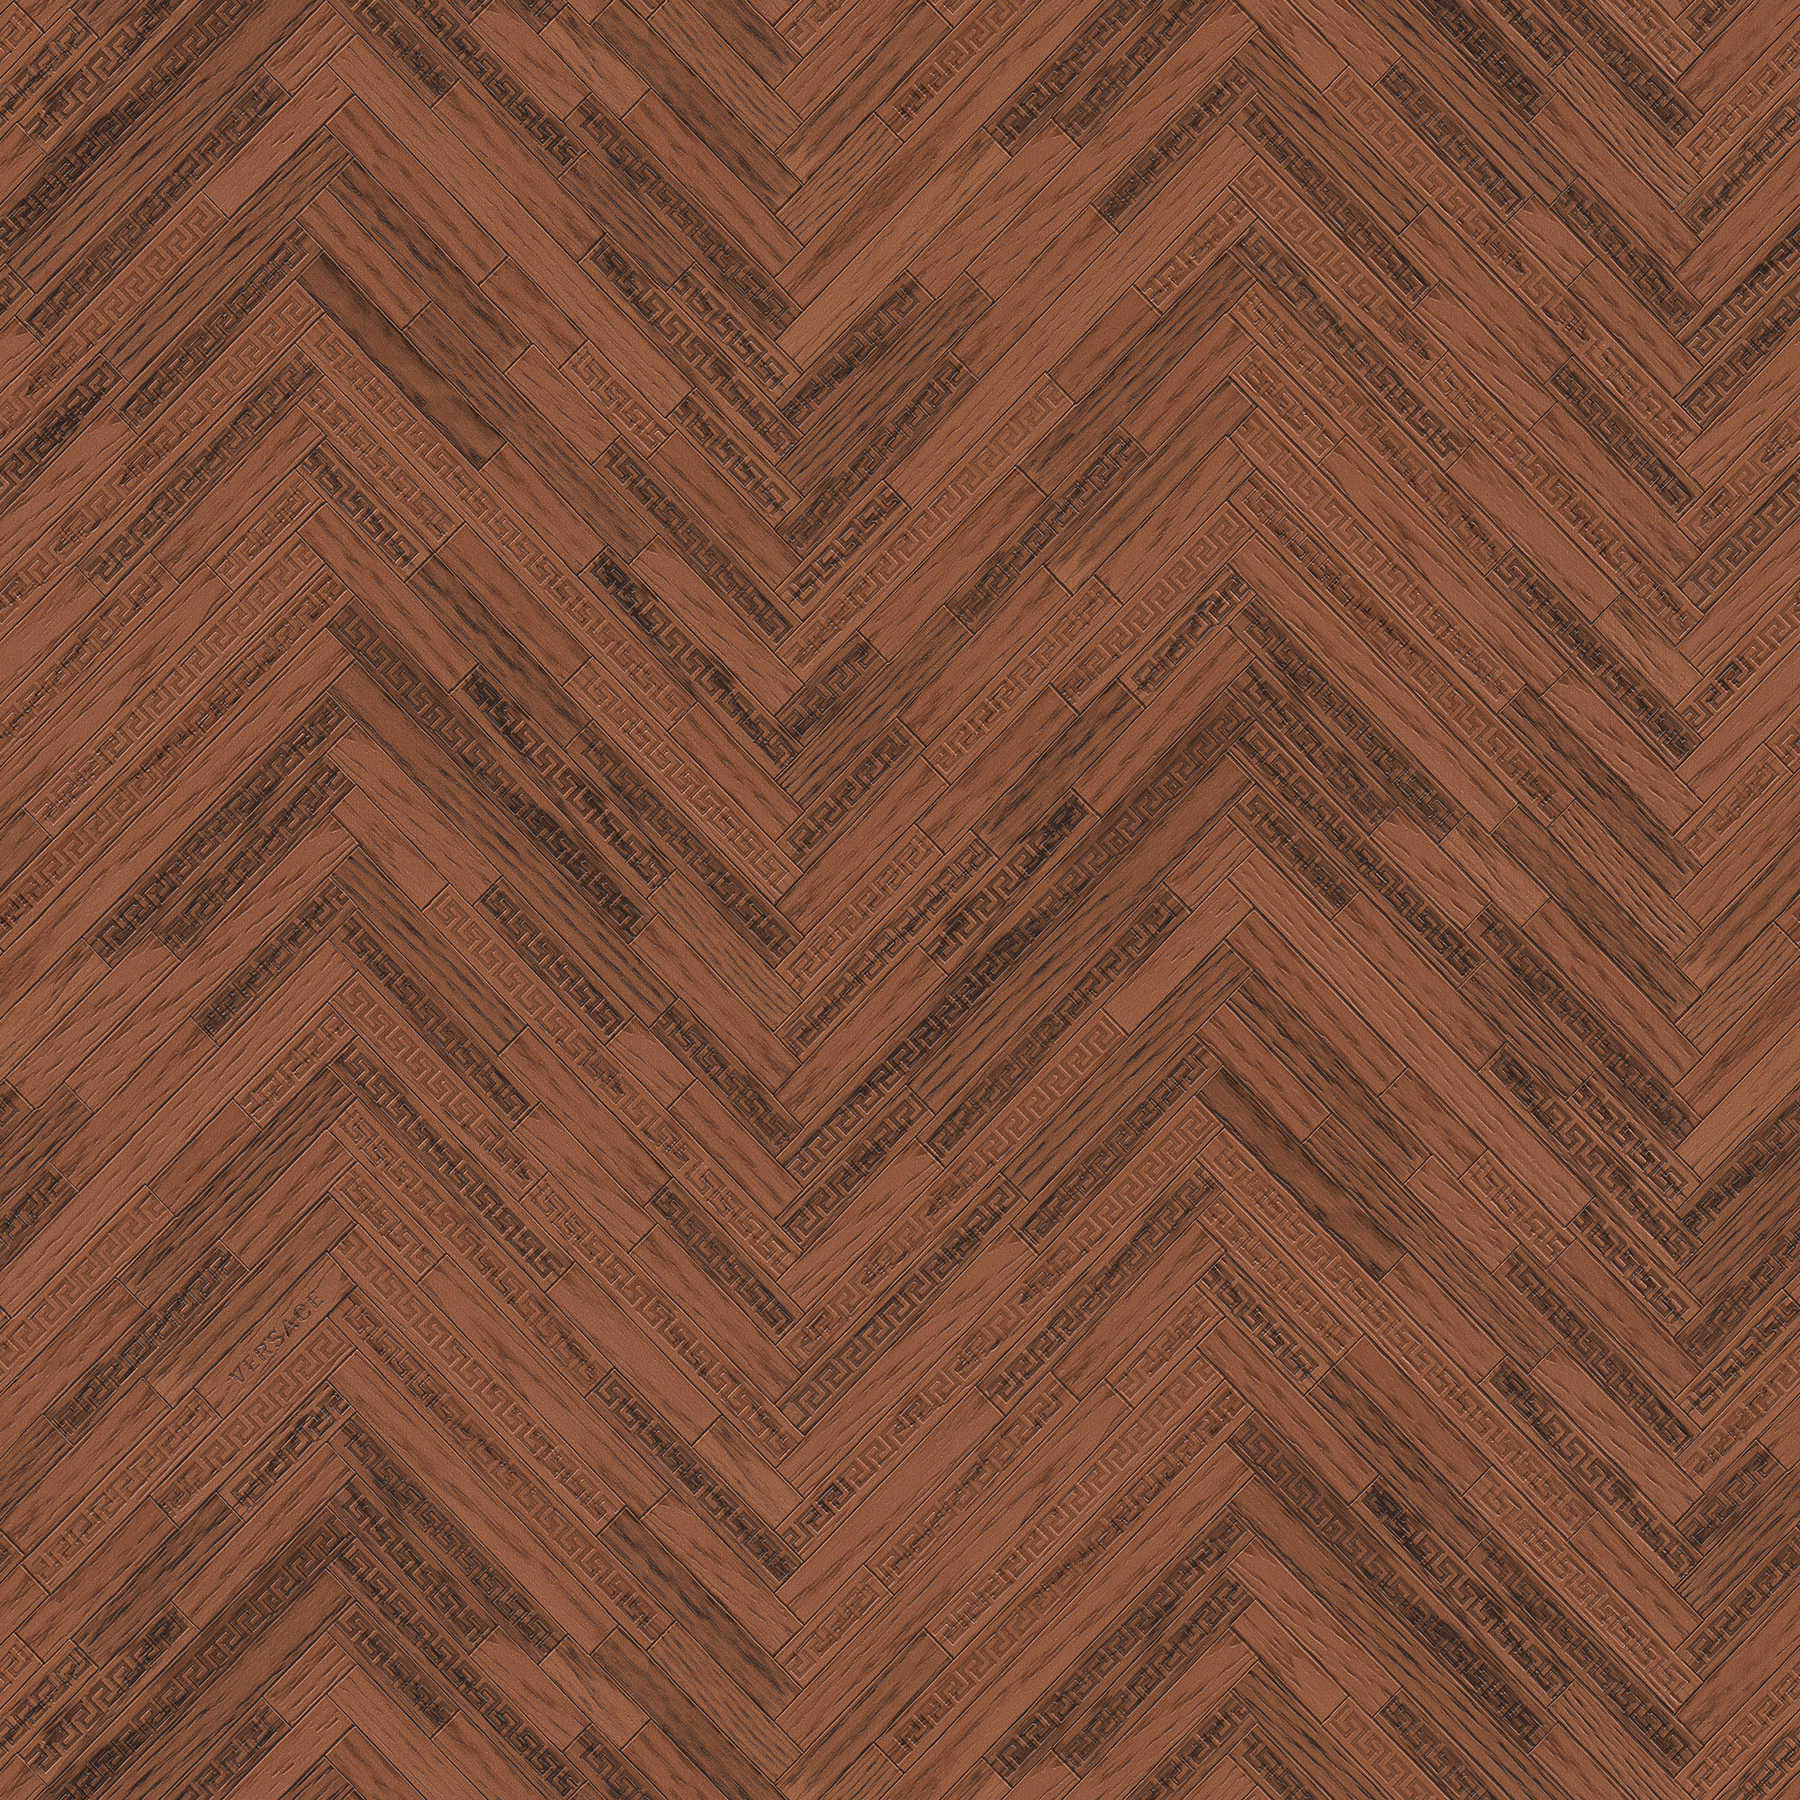 VERSACE Home Tapete elegante Holzoptik – Braun, Kupfer, Rot
